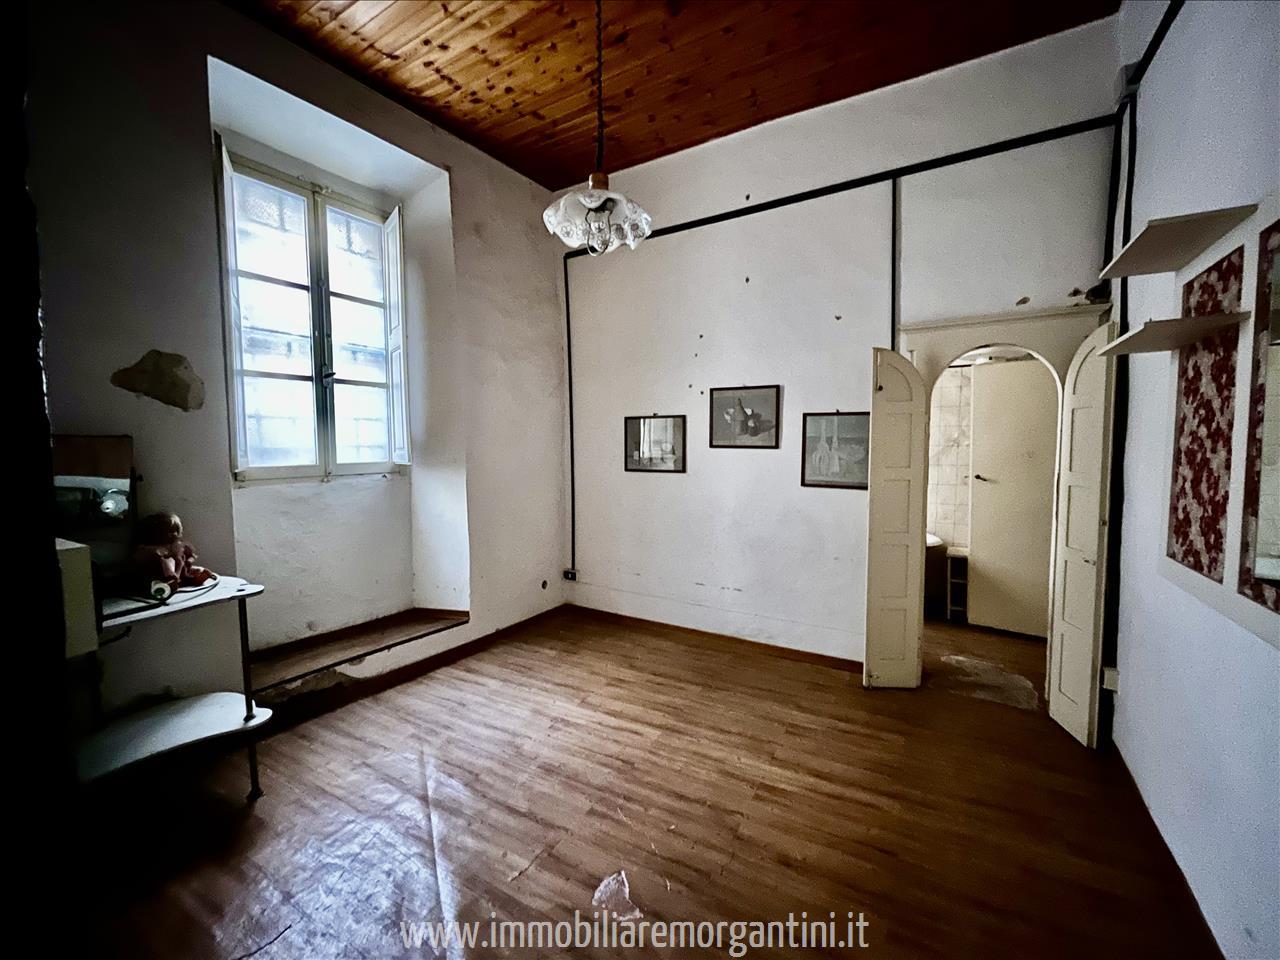 Appartamento in vendita a Sarteano, 1 locali, prezzo € 45.000 | PortaleAgenzieImmobiliari.it